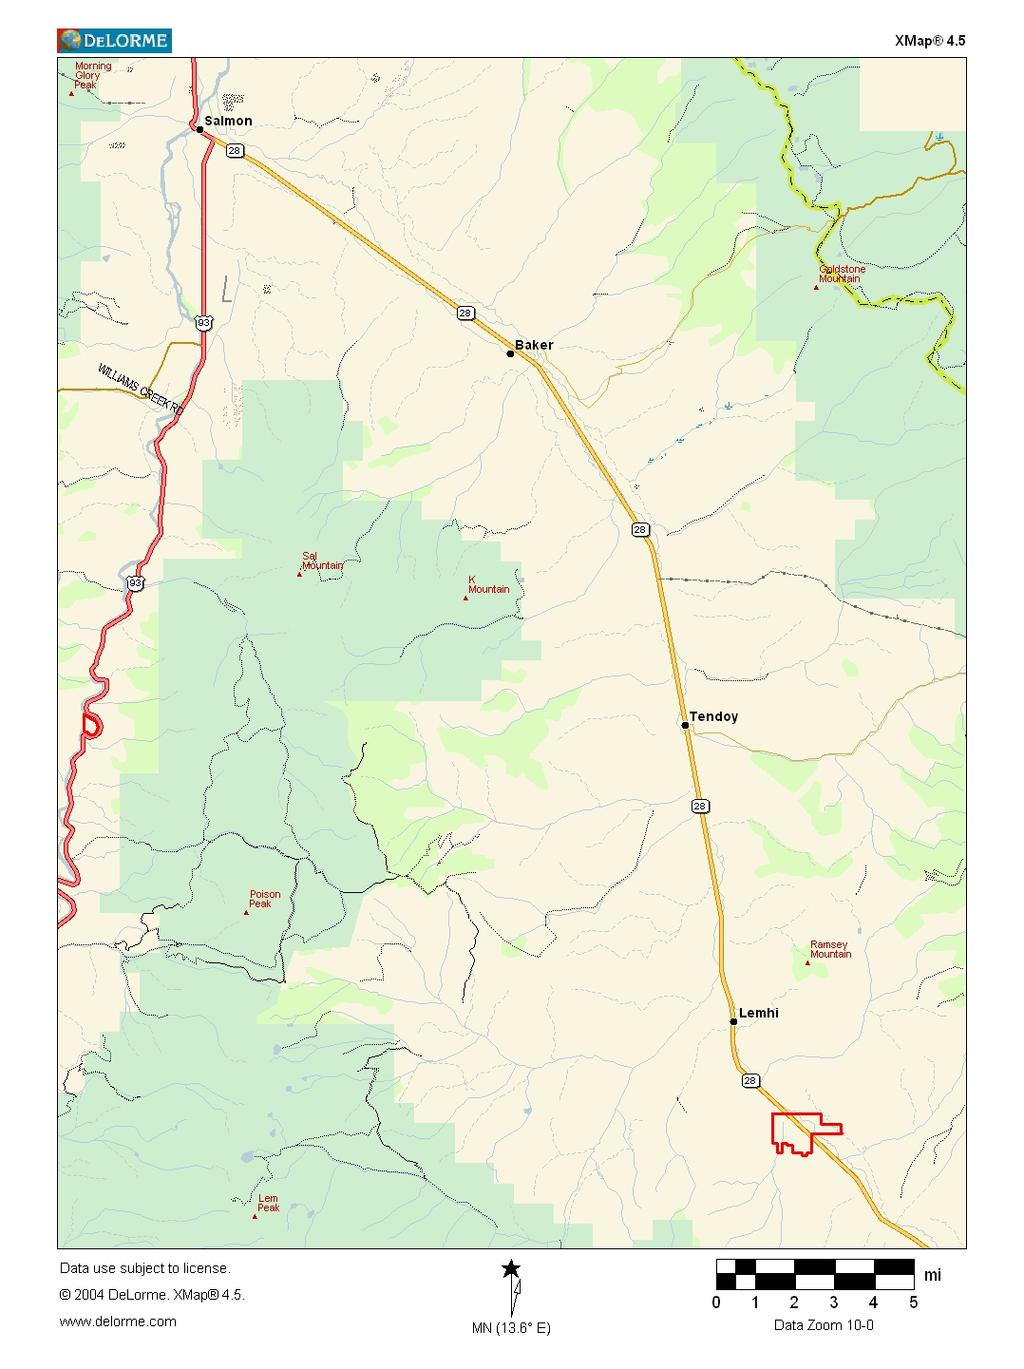 LOCATION MAP